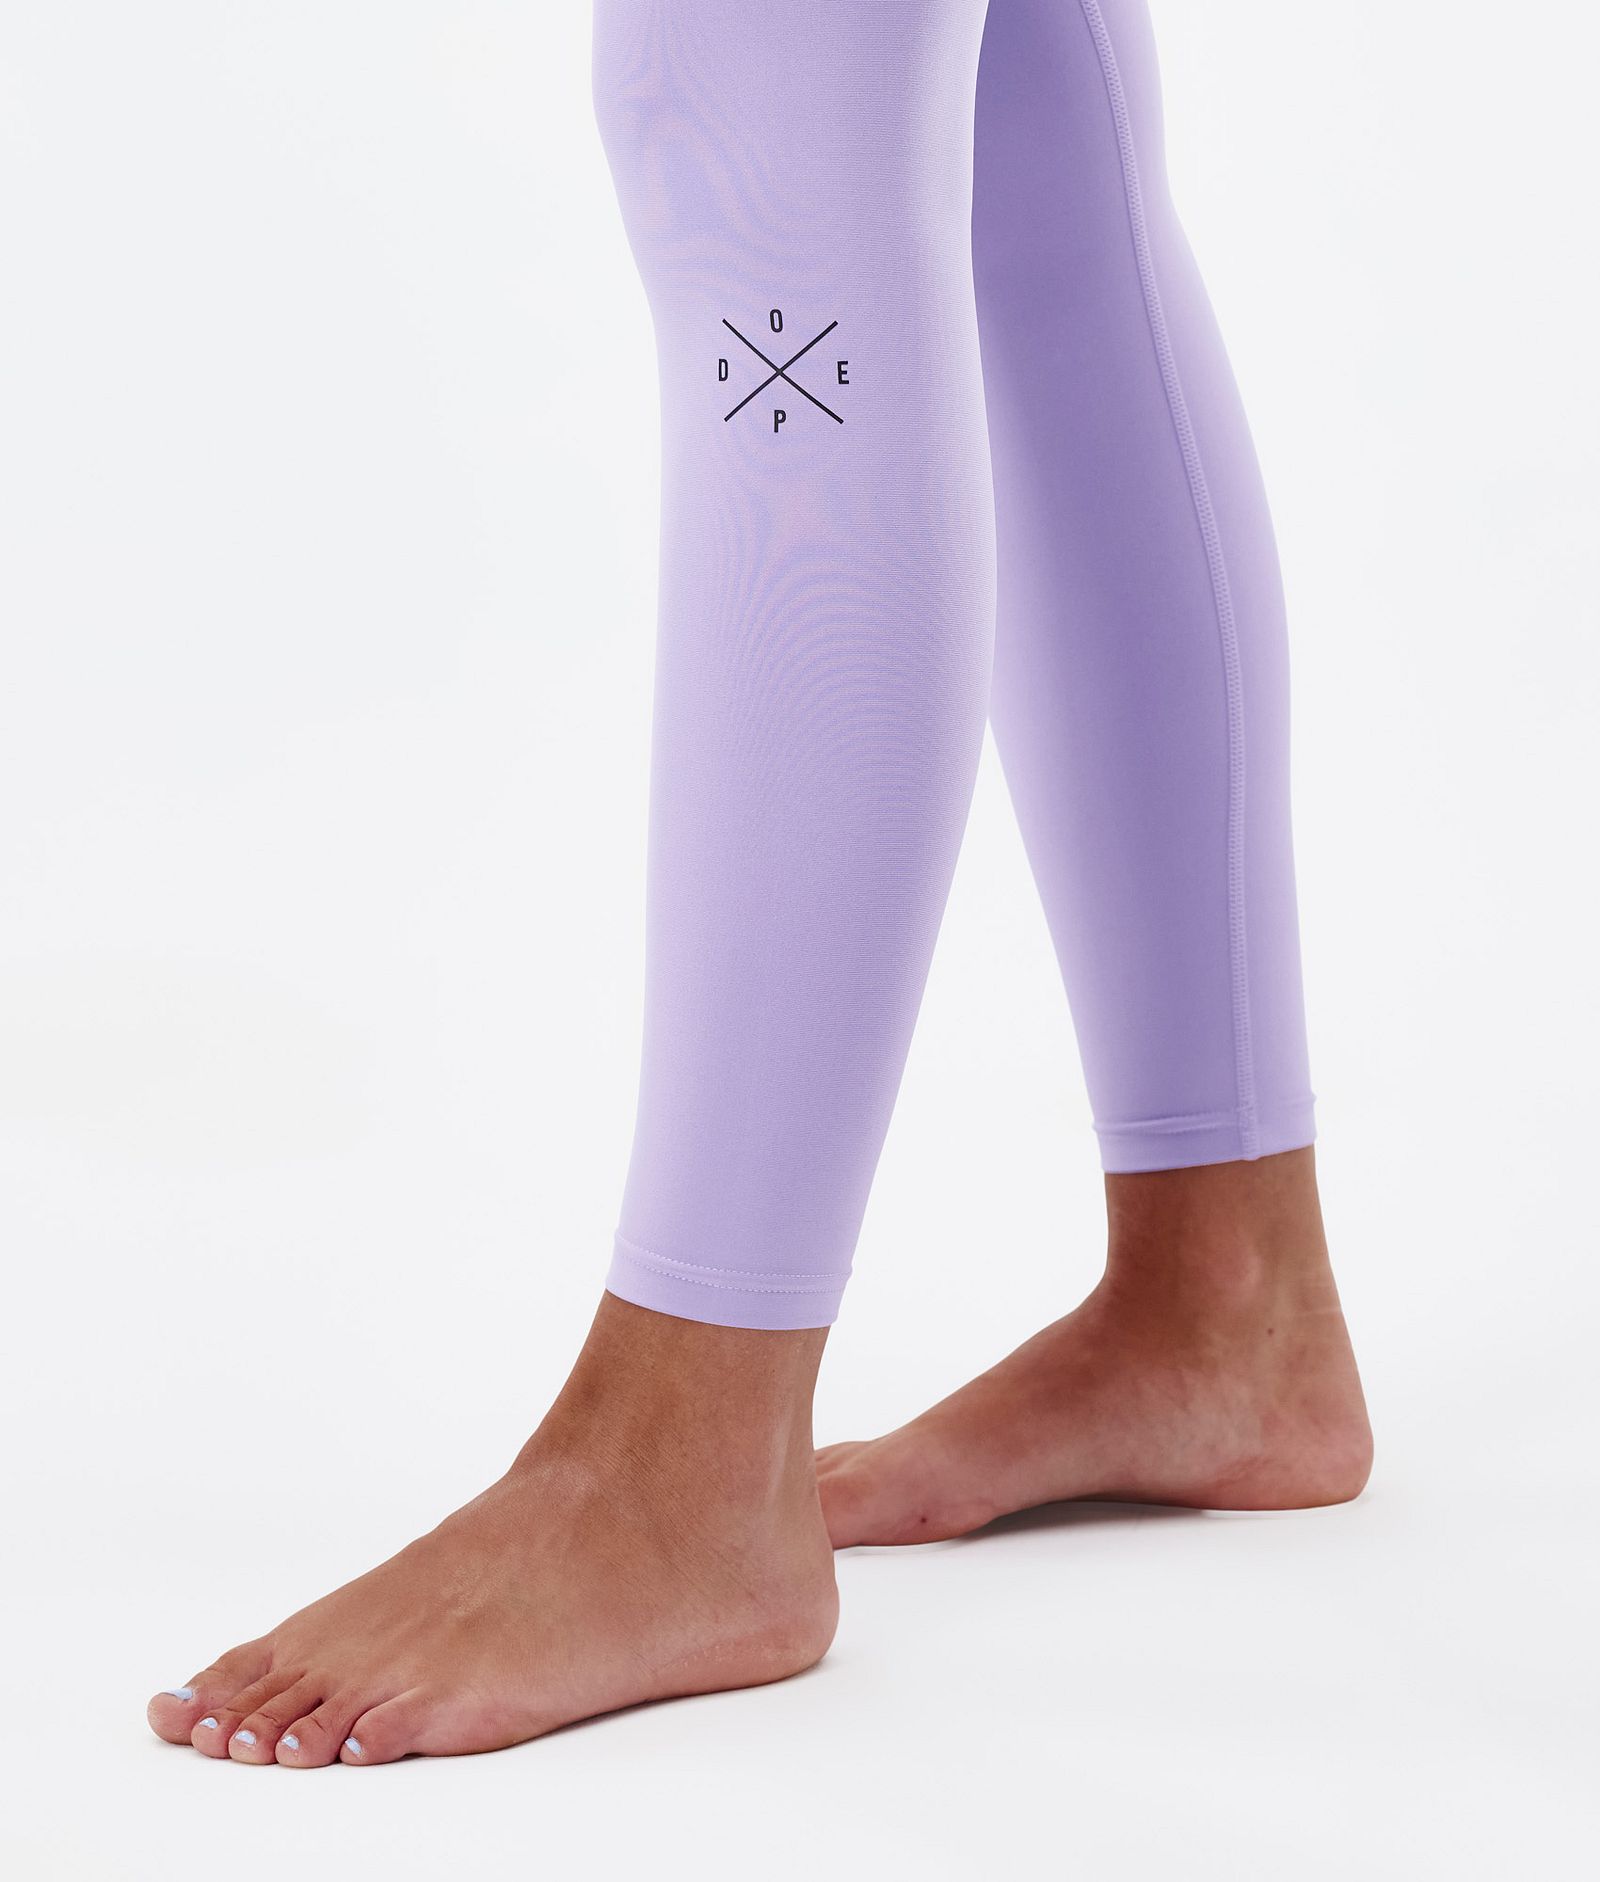 Snuggle W 2022 Pantalon thermique Femme 2X-Up Faded Violet, Image 7 sur 7